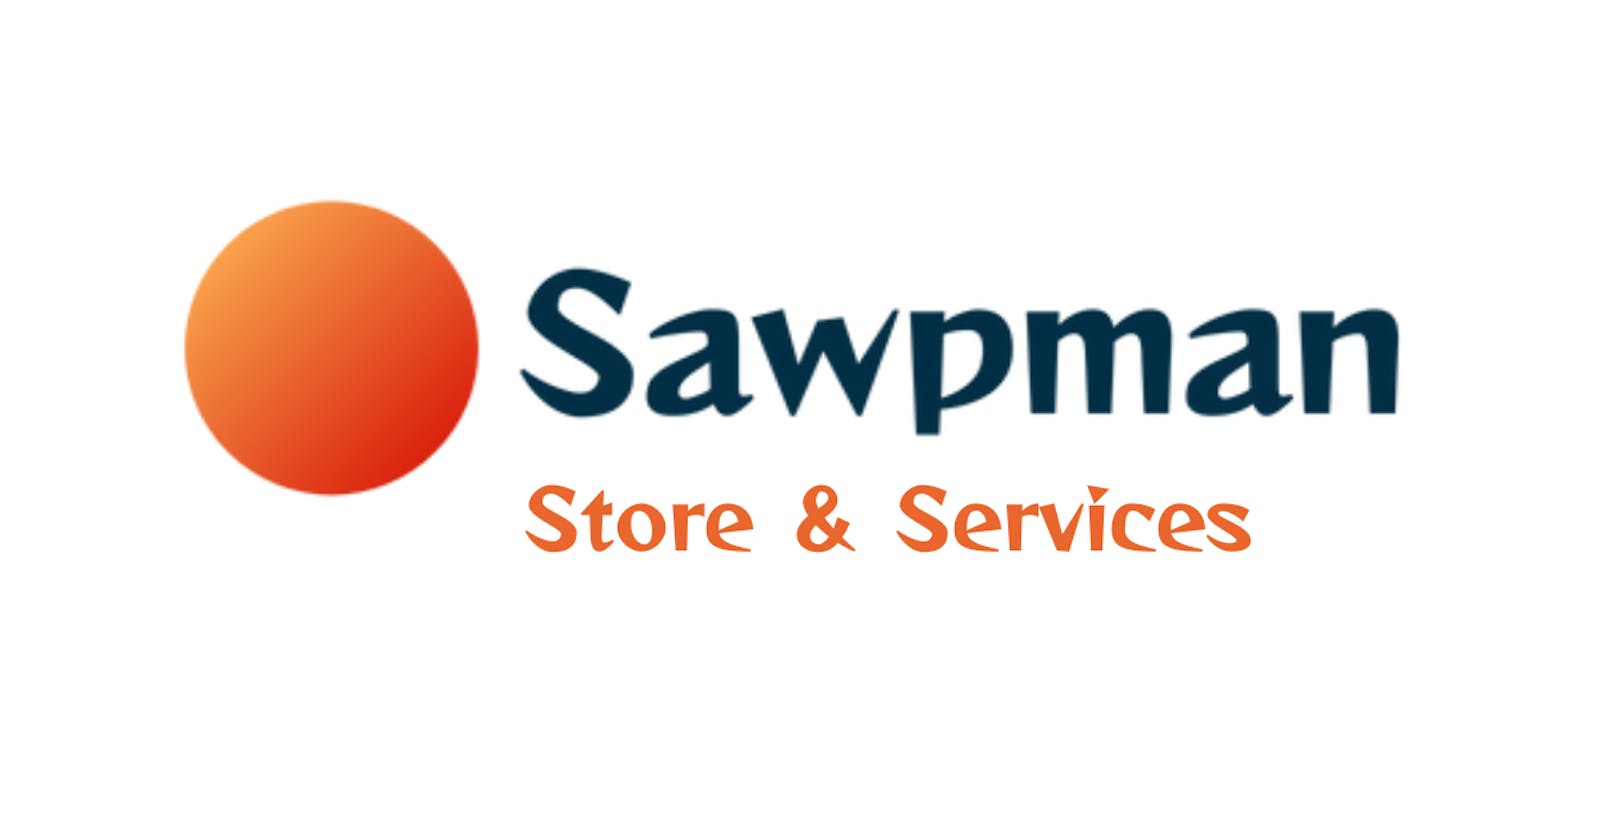 Sawpman Store